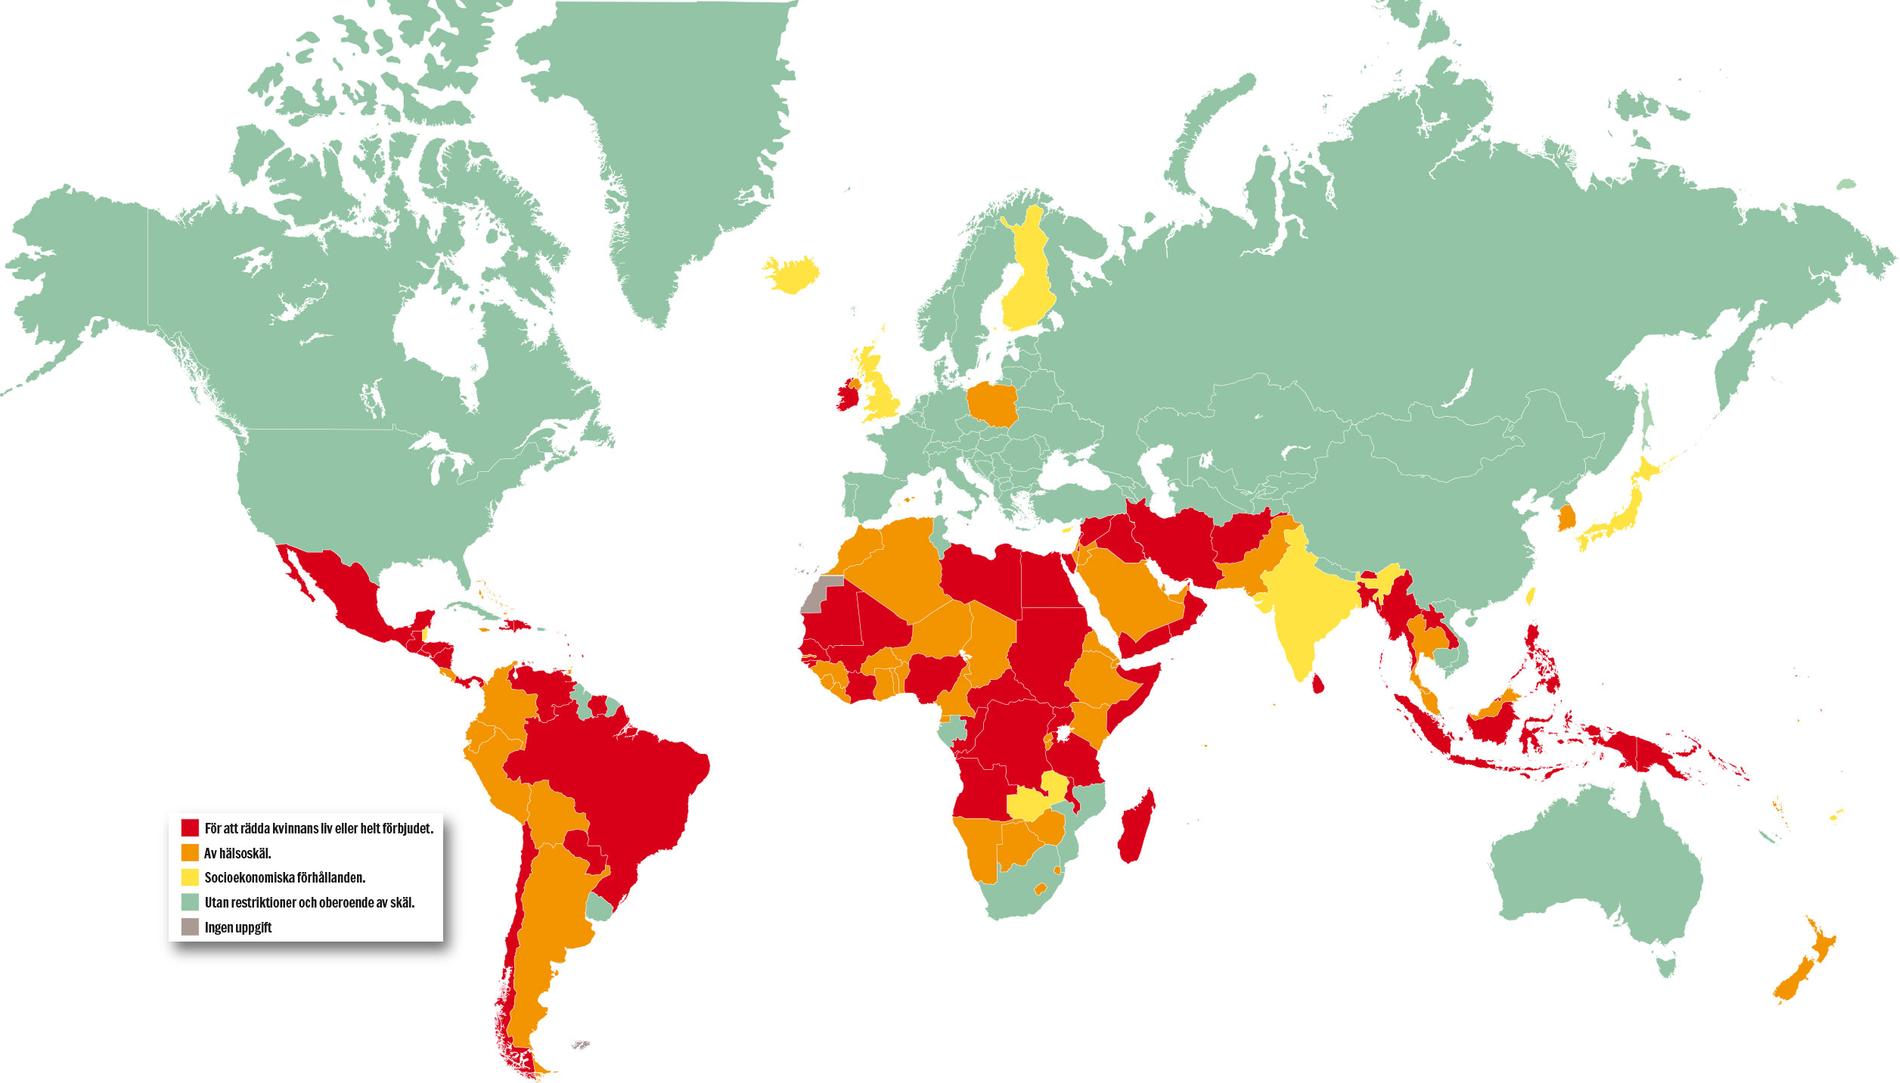 Kartan visar vilka länder som förbjuder abort – färgordningen visar graden av förbud, där rött är totalförbud. I vissa länder får kvinnan göra abort om hon uppfyller något av följande kriterier: Rött: för att rädda kvinnans liv är det helt förbjudet. Orange: av hälsoskäl Gult: av socioekonomiska förhållanden Grönt: utan restriktioner och oberoende av skäl